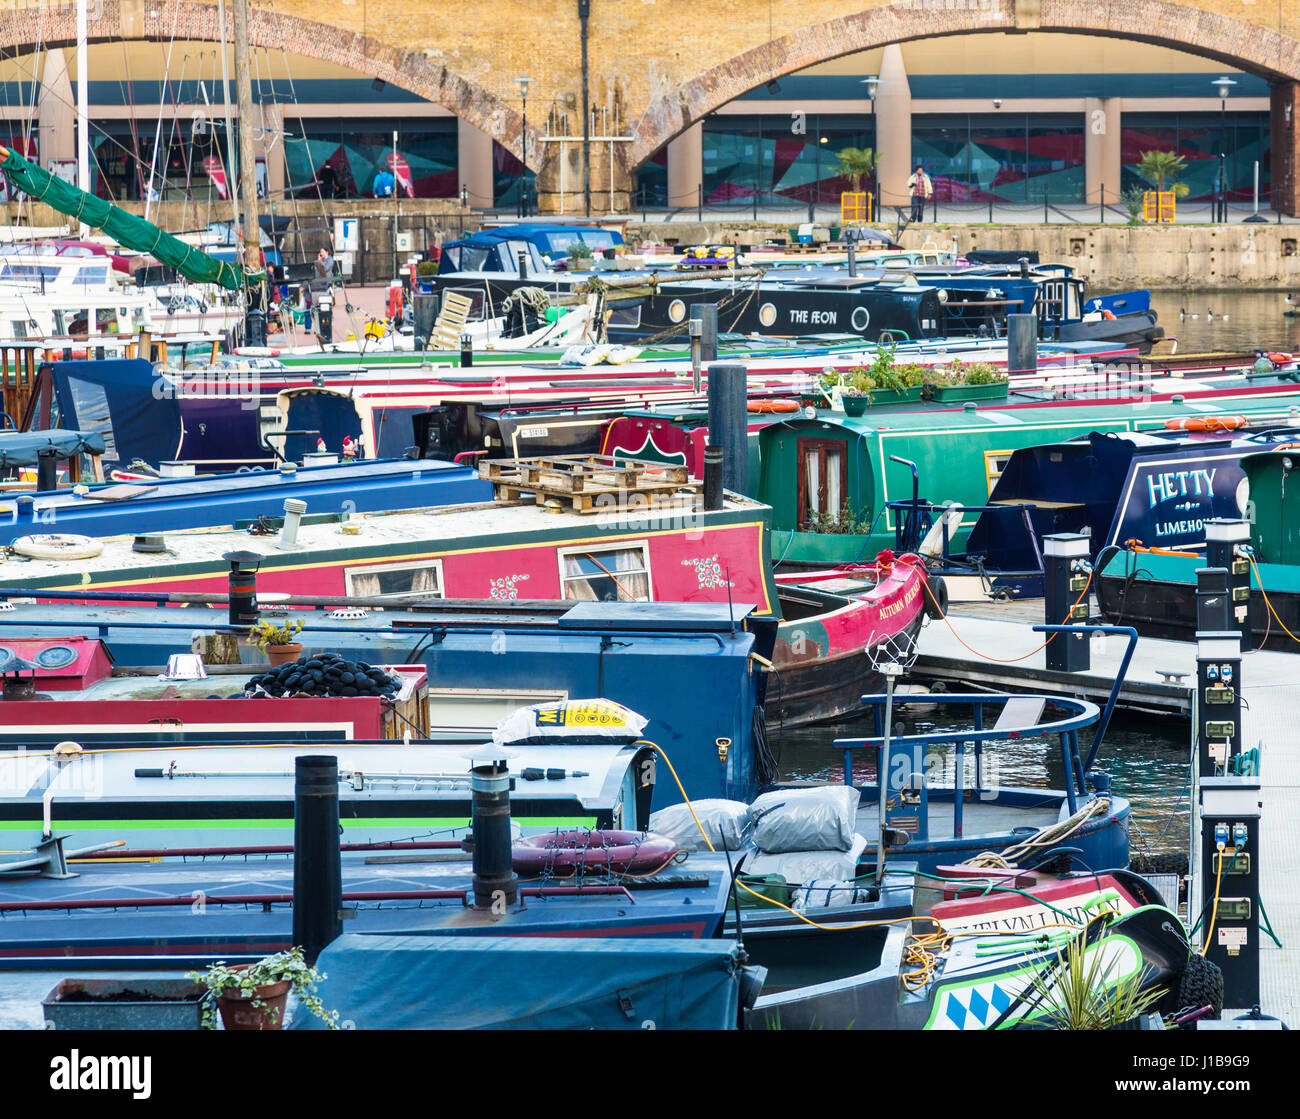 Barcas y casas flotantes en la cuenca de Limehouse Marina en la zona de Docklands, el East End de Londres, Inglaterra Foto de stock